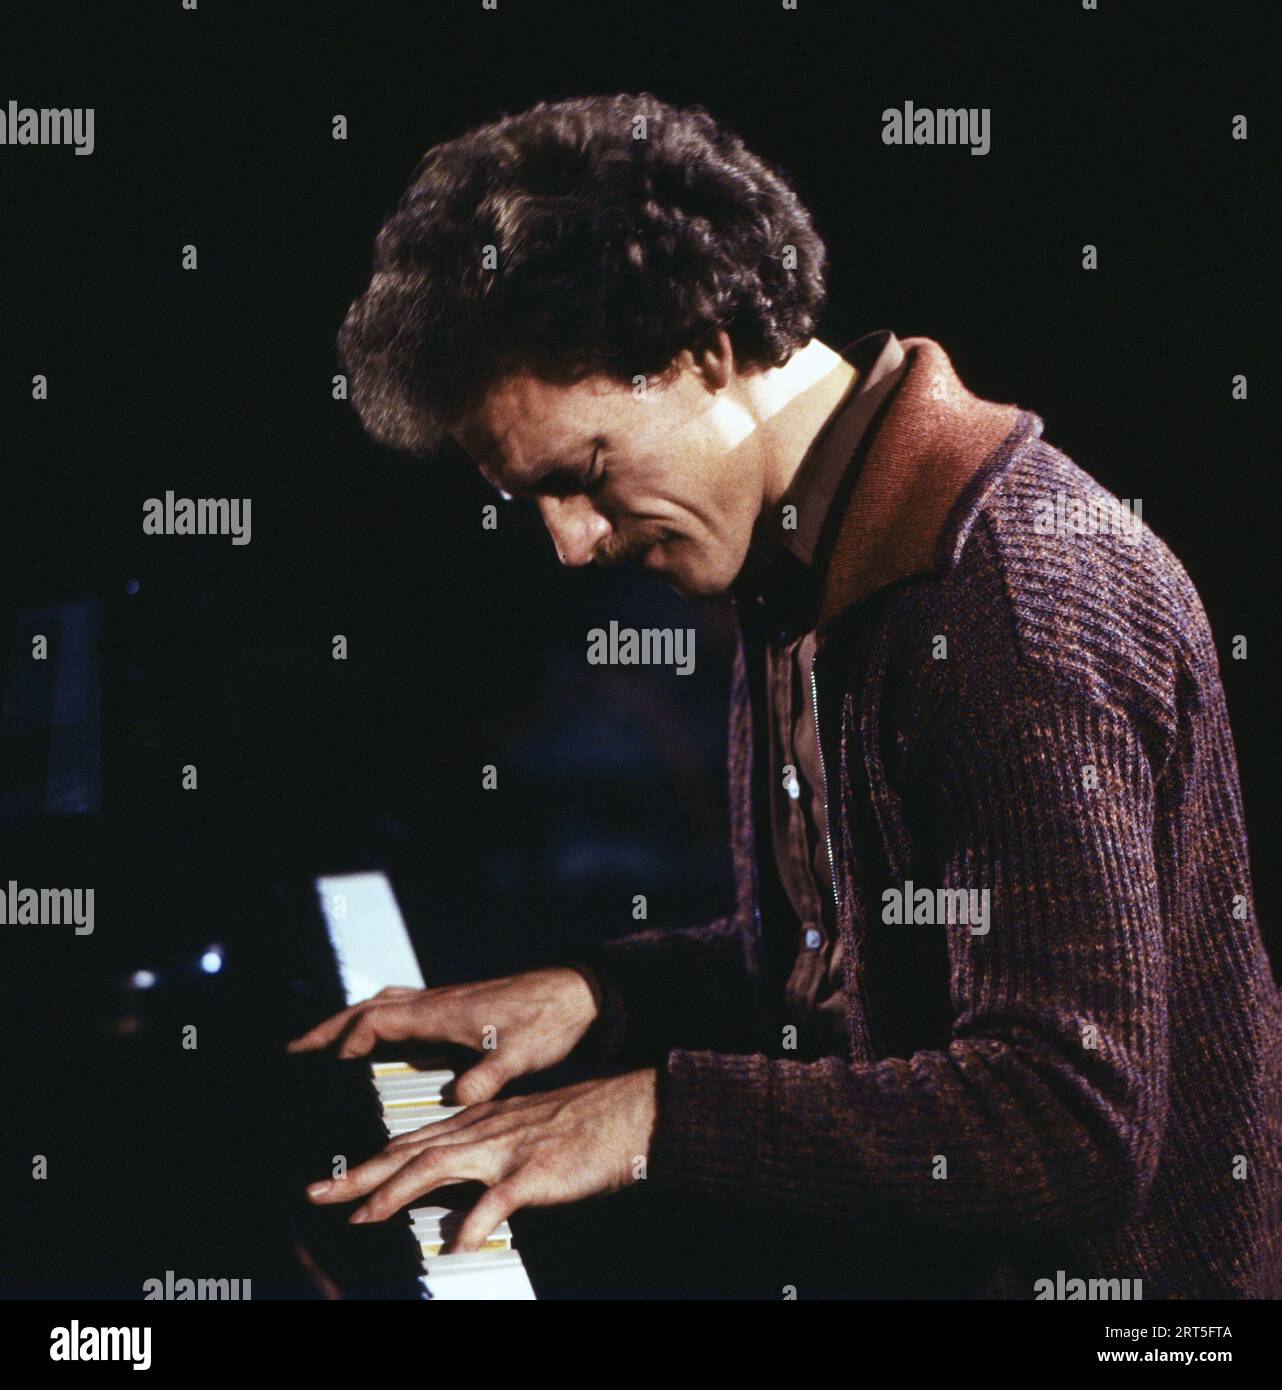 John Taylor, britischer Jazzpianist, bei einem Auftritt, Deutschland um 1977. Stock Photo